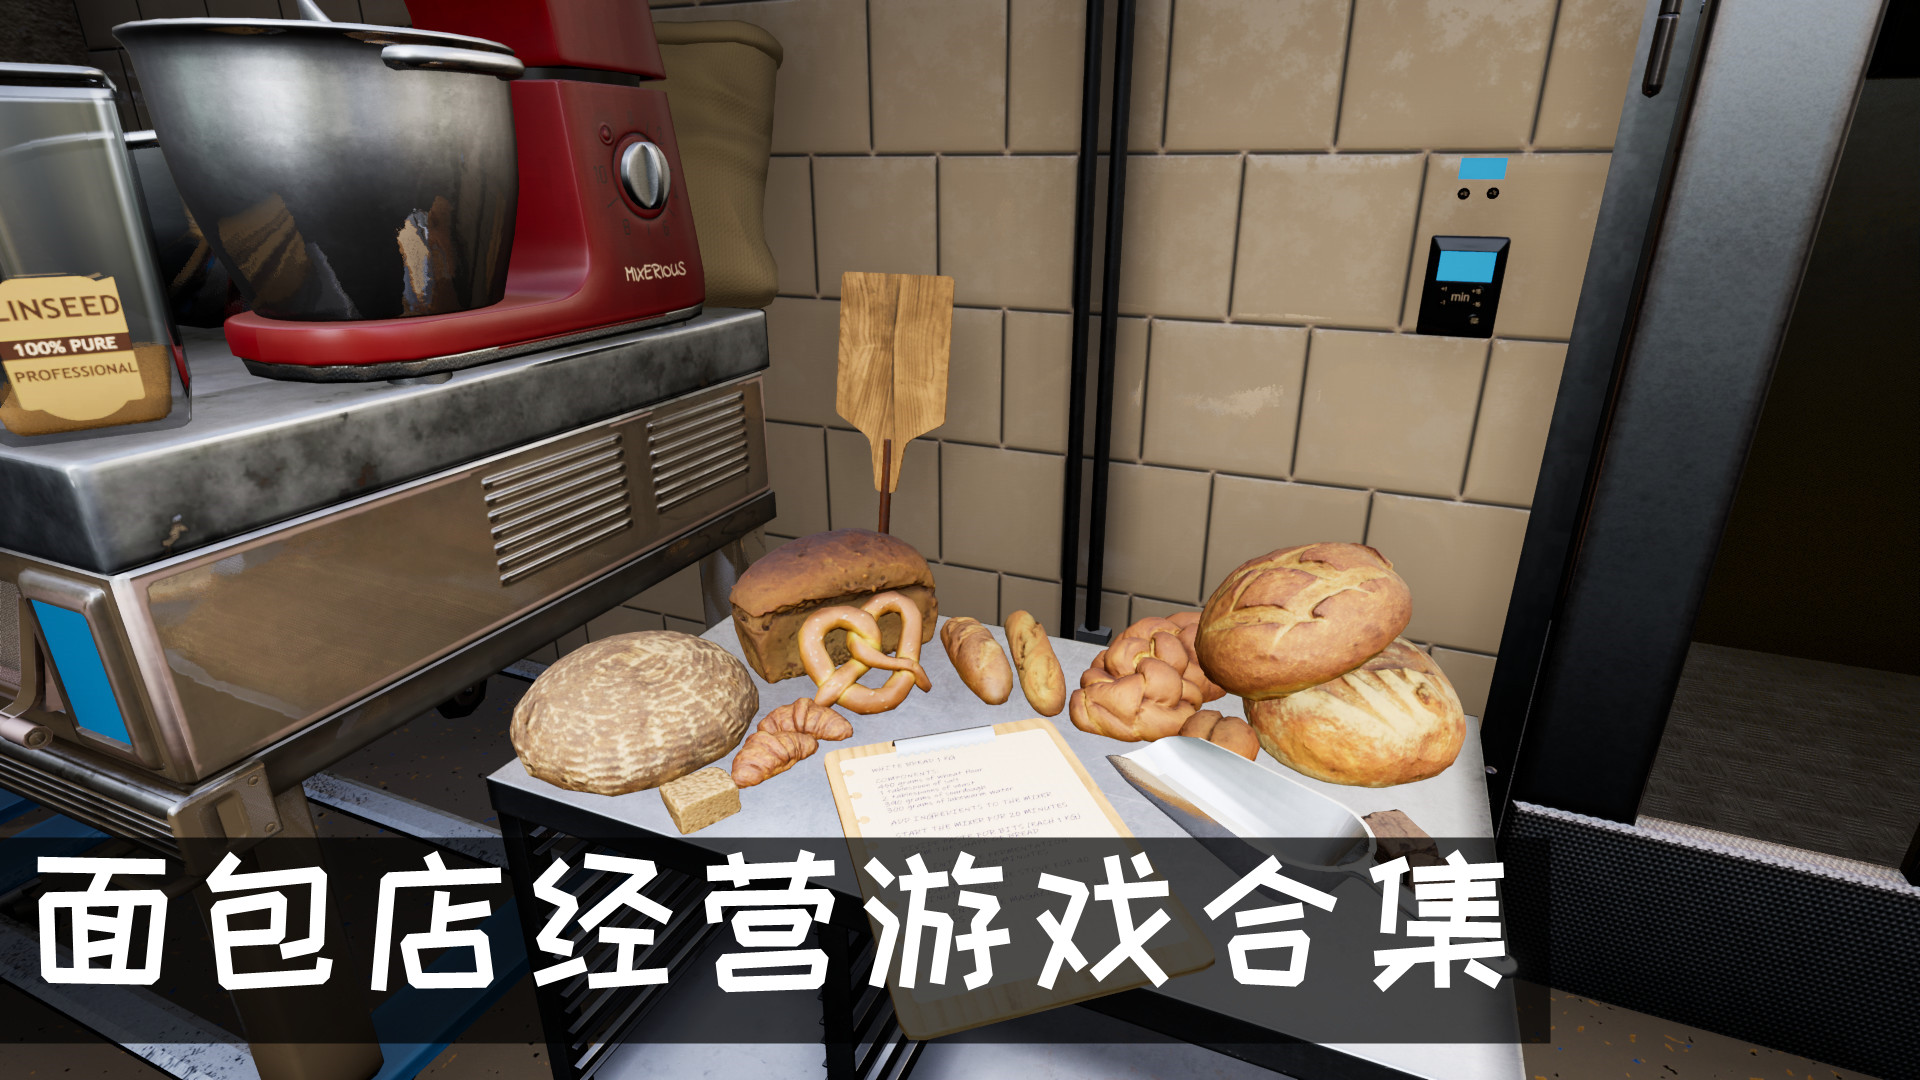 模拟经营面包店游戏推荐 面包店经营游戏推荐